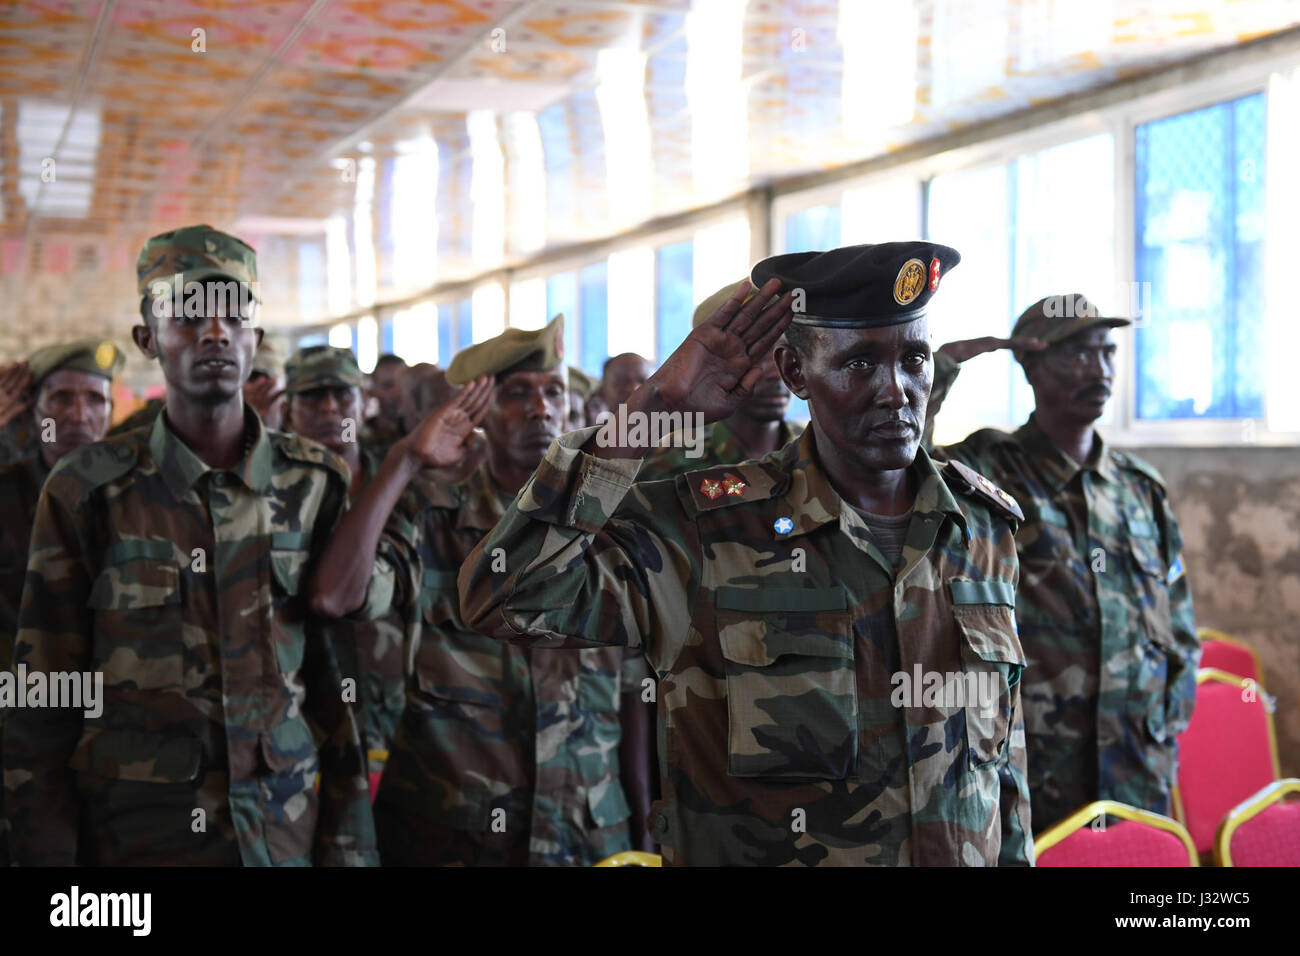 L'armée nationale somalienne (SNA) les saluent comme ils chantent l'hymne national de la Somalie au cours d'une cérémonie de passage pour marquer la fin d'un cours de formation militaire menée par la Mission de formation de l'Union européenne en Somalie (EUTM) à l'Dhegabadan Training Camp (Jazeera) à Mogadiscio, Somalie, le 14 janvier 2017. L'AMISOM Photo / Omar Abdisalan Banque D'Images